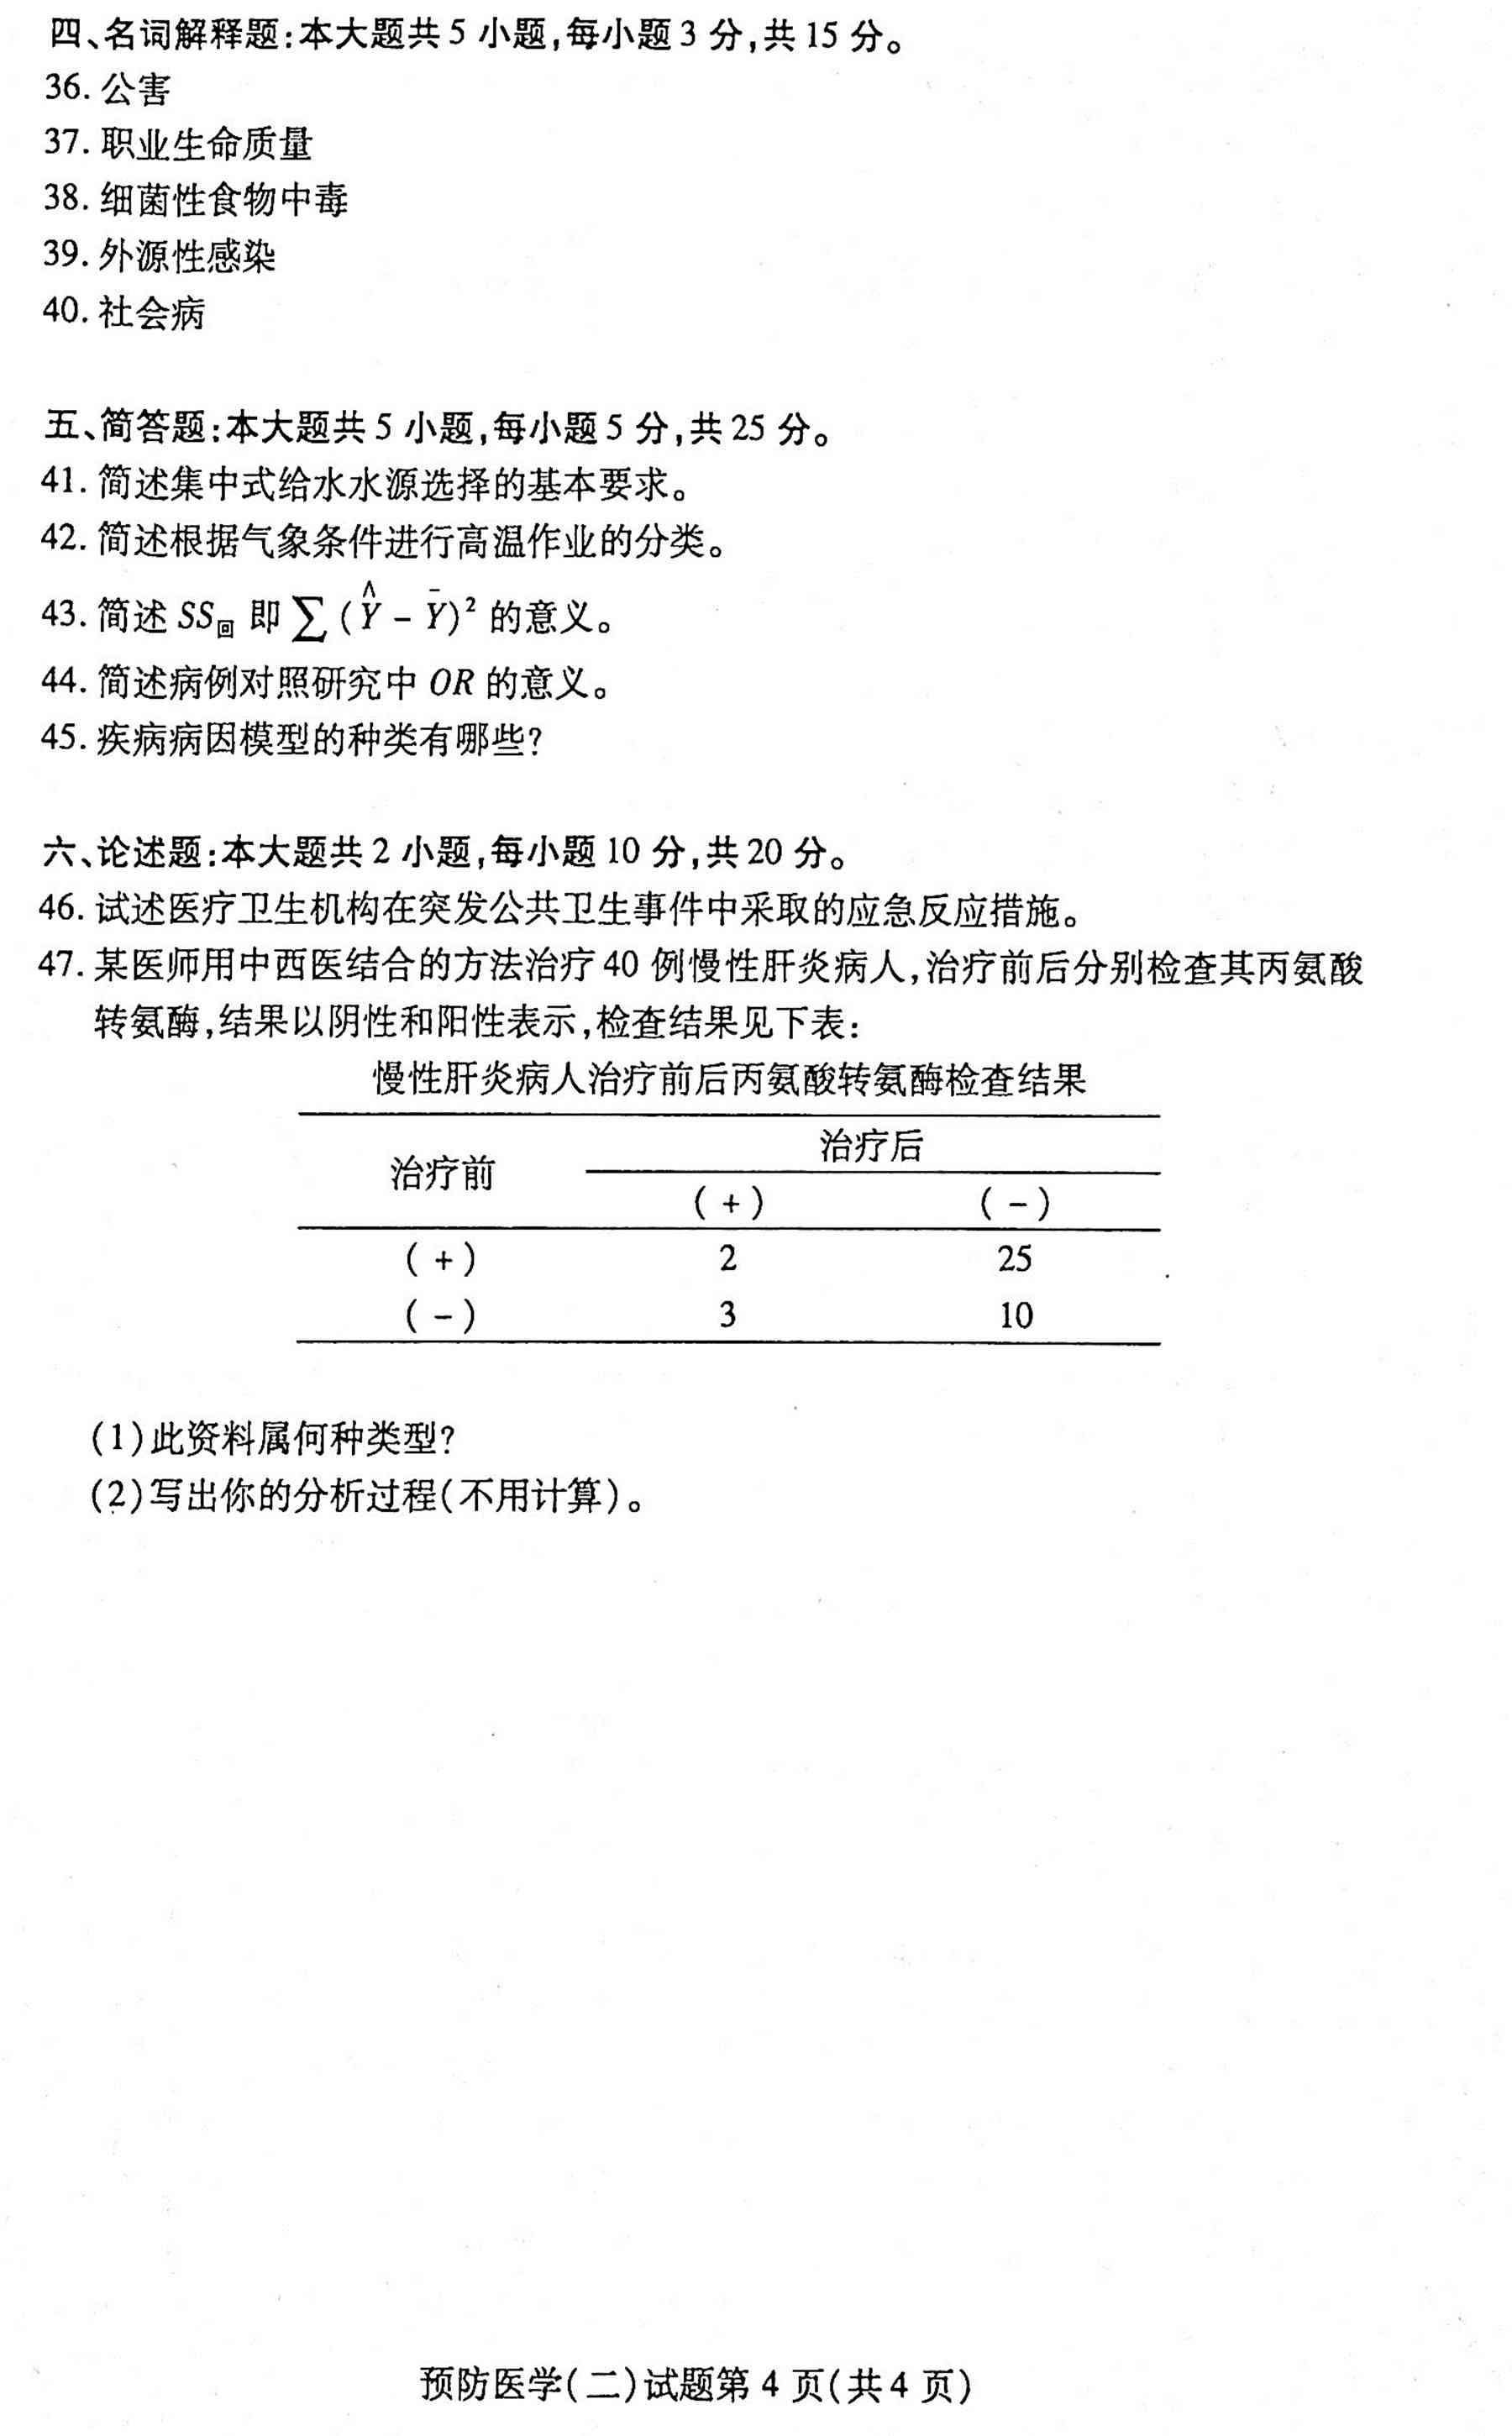 贵州省2020年10月自学考试03200预防医学（二）真题及答案